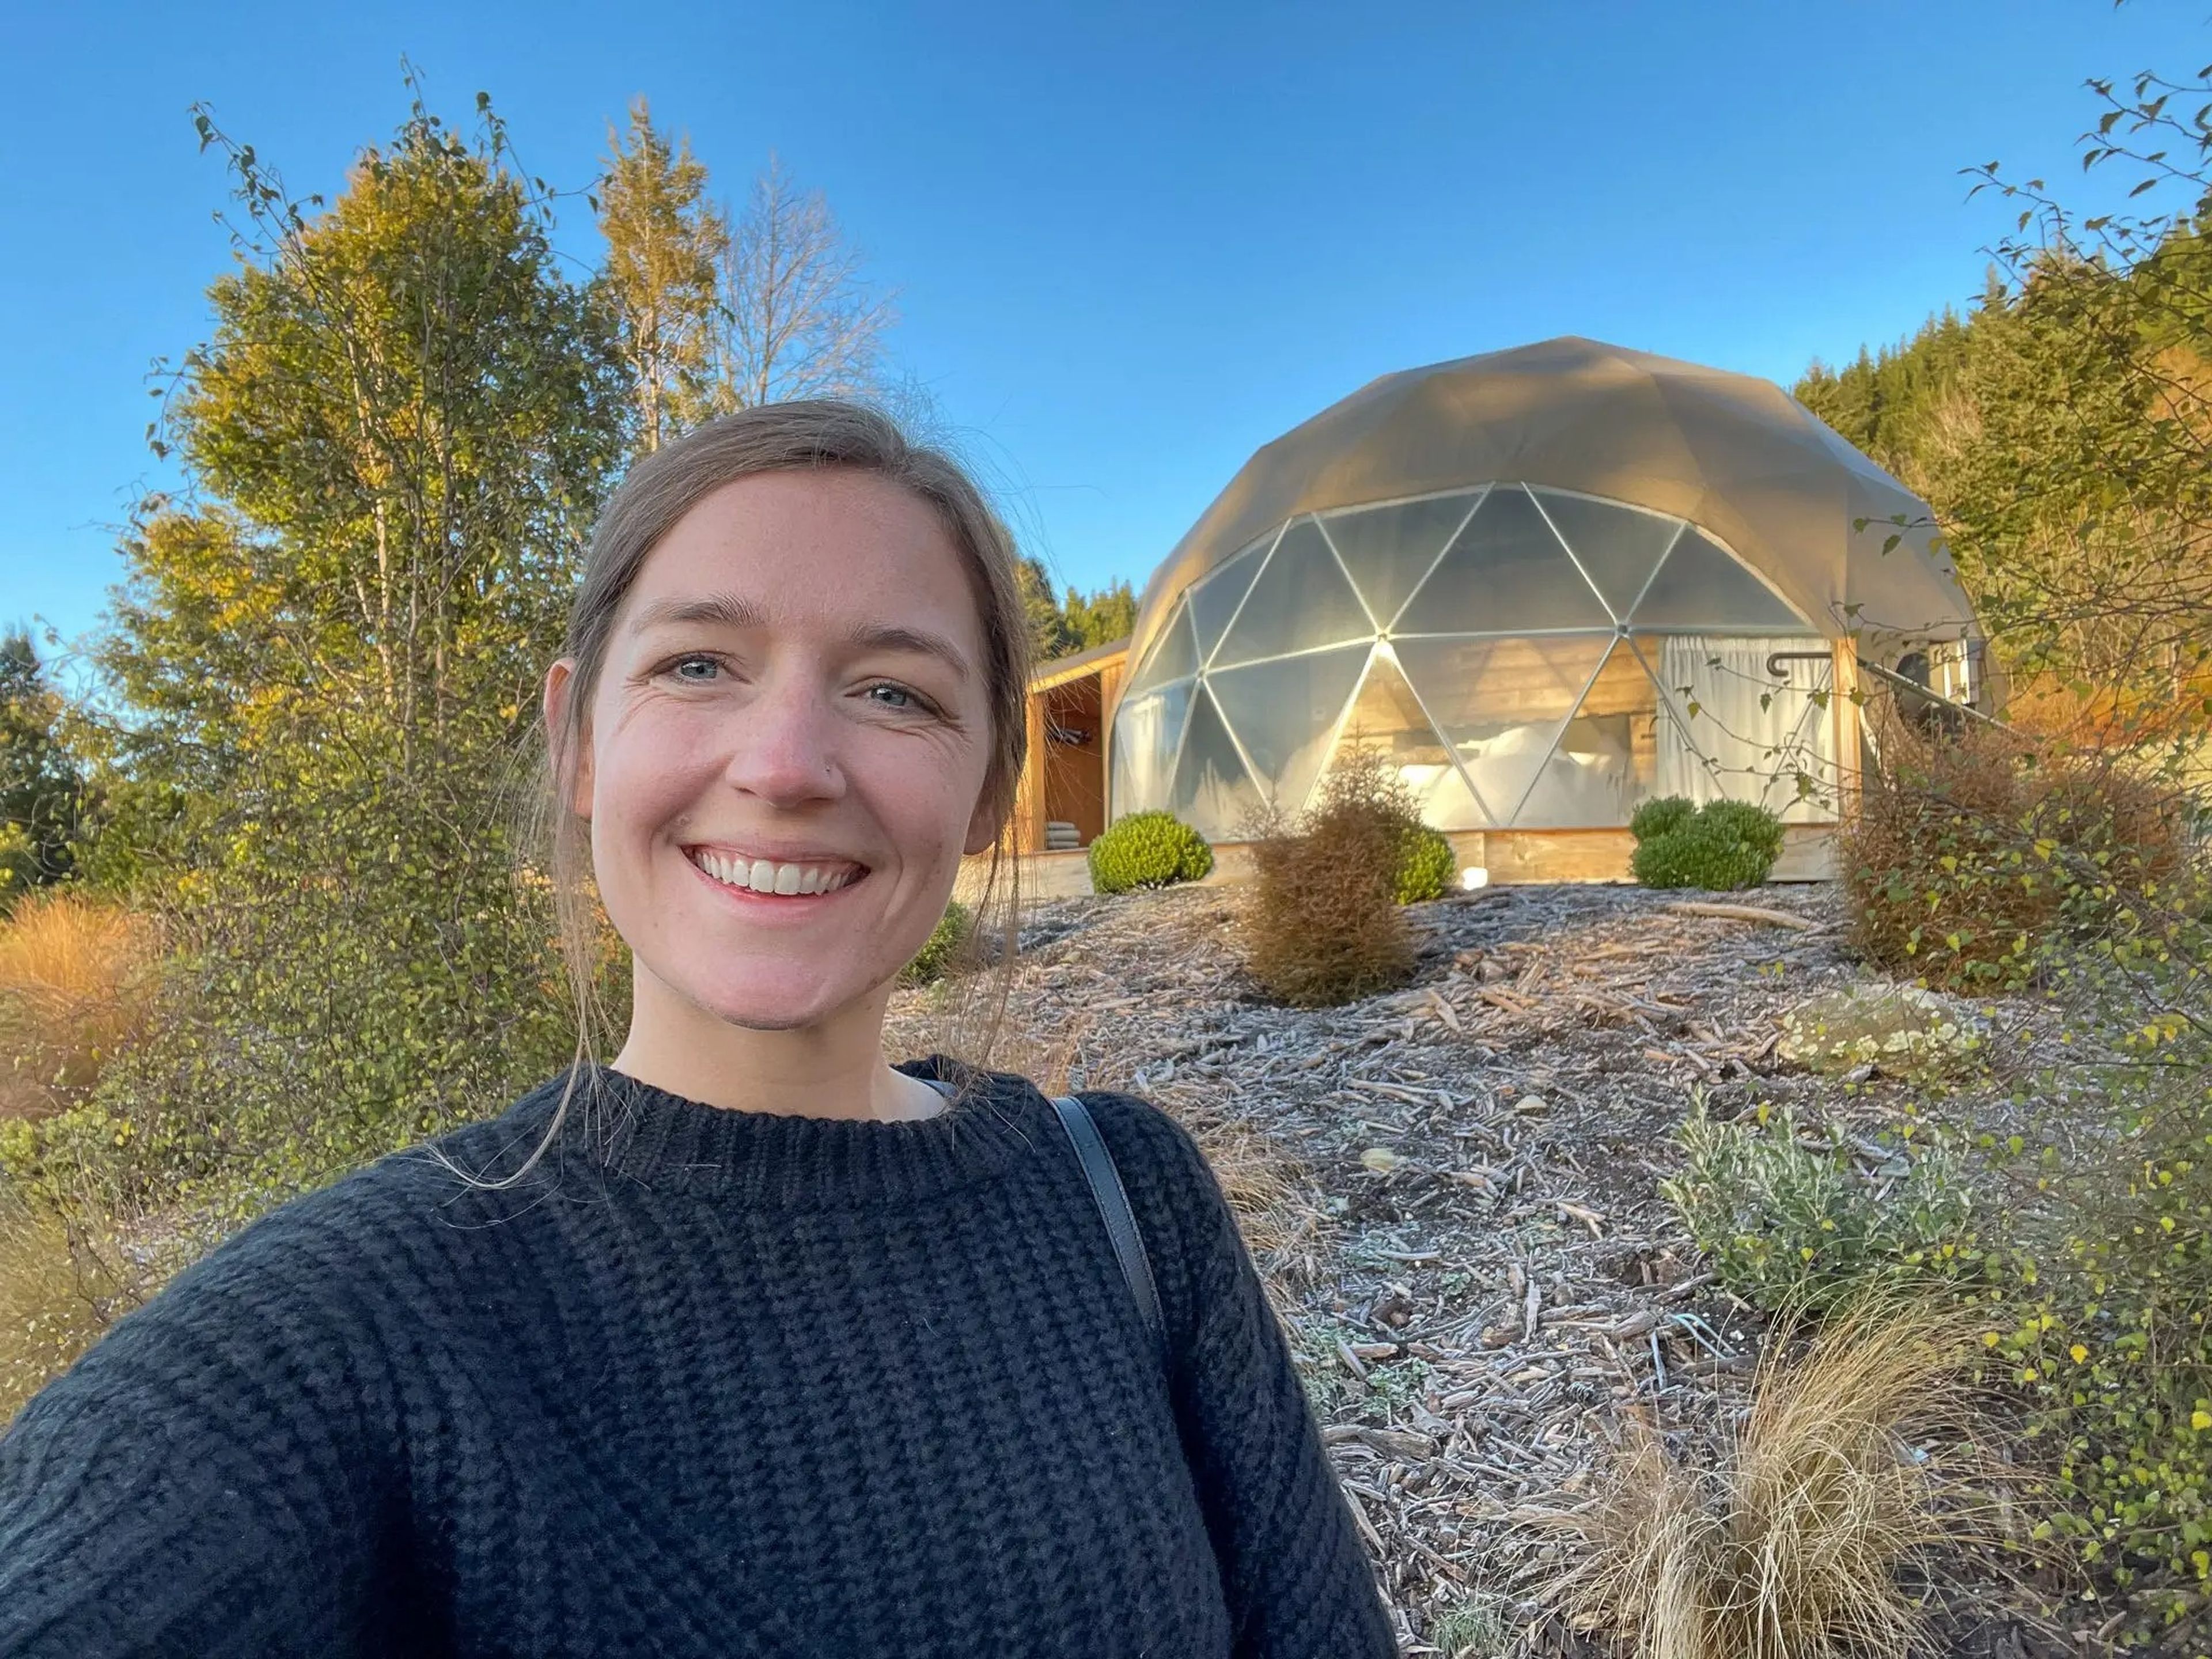 La autora de ‘Business Insider' delante del domo geodésico en el que pasó una noche durante su viaje a Nueva Zelanda.